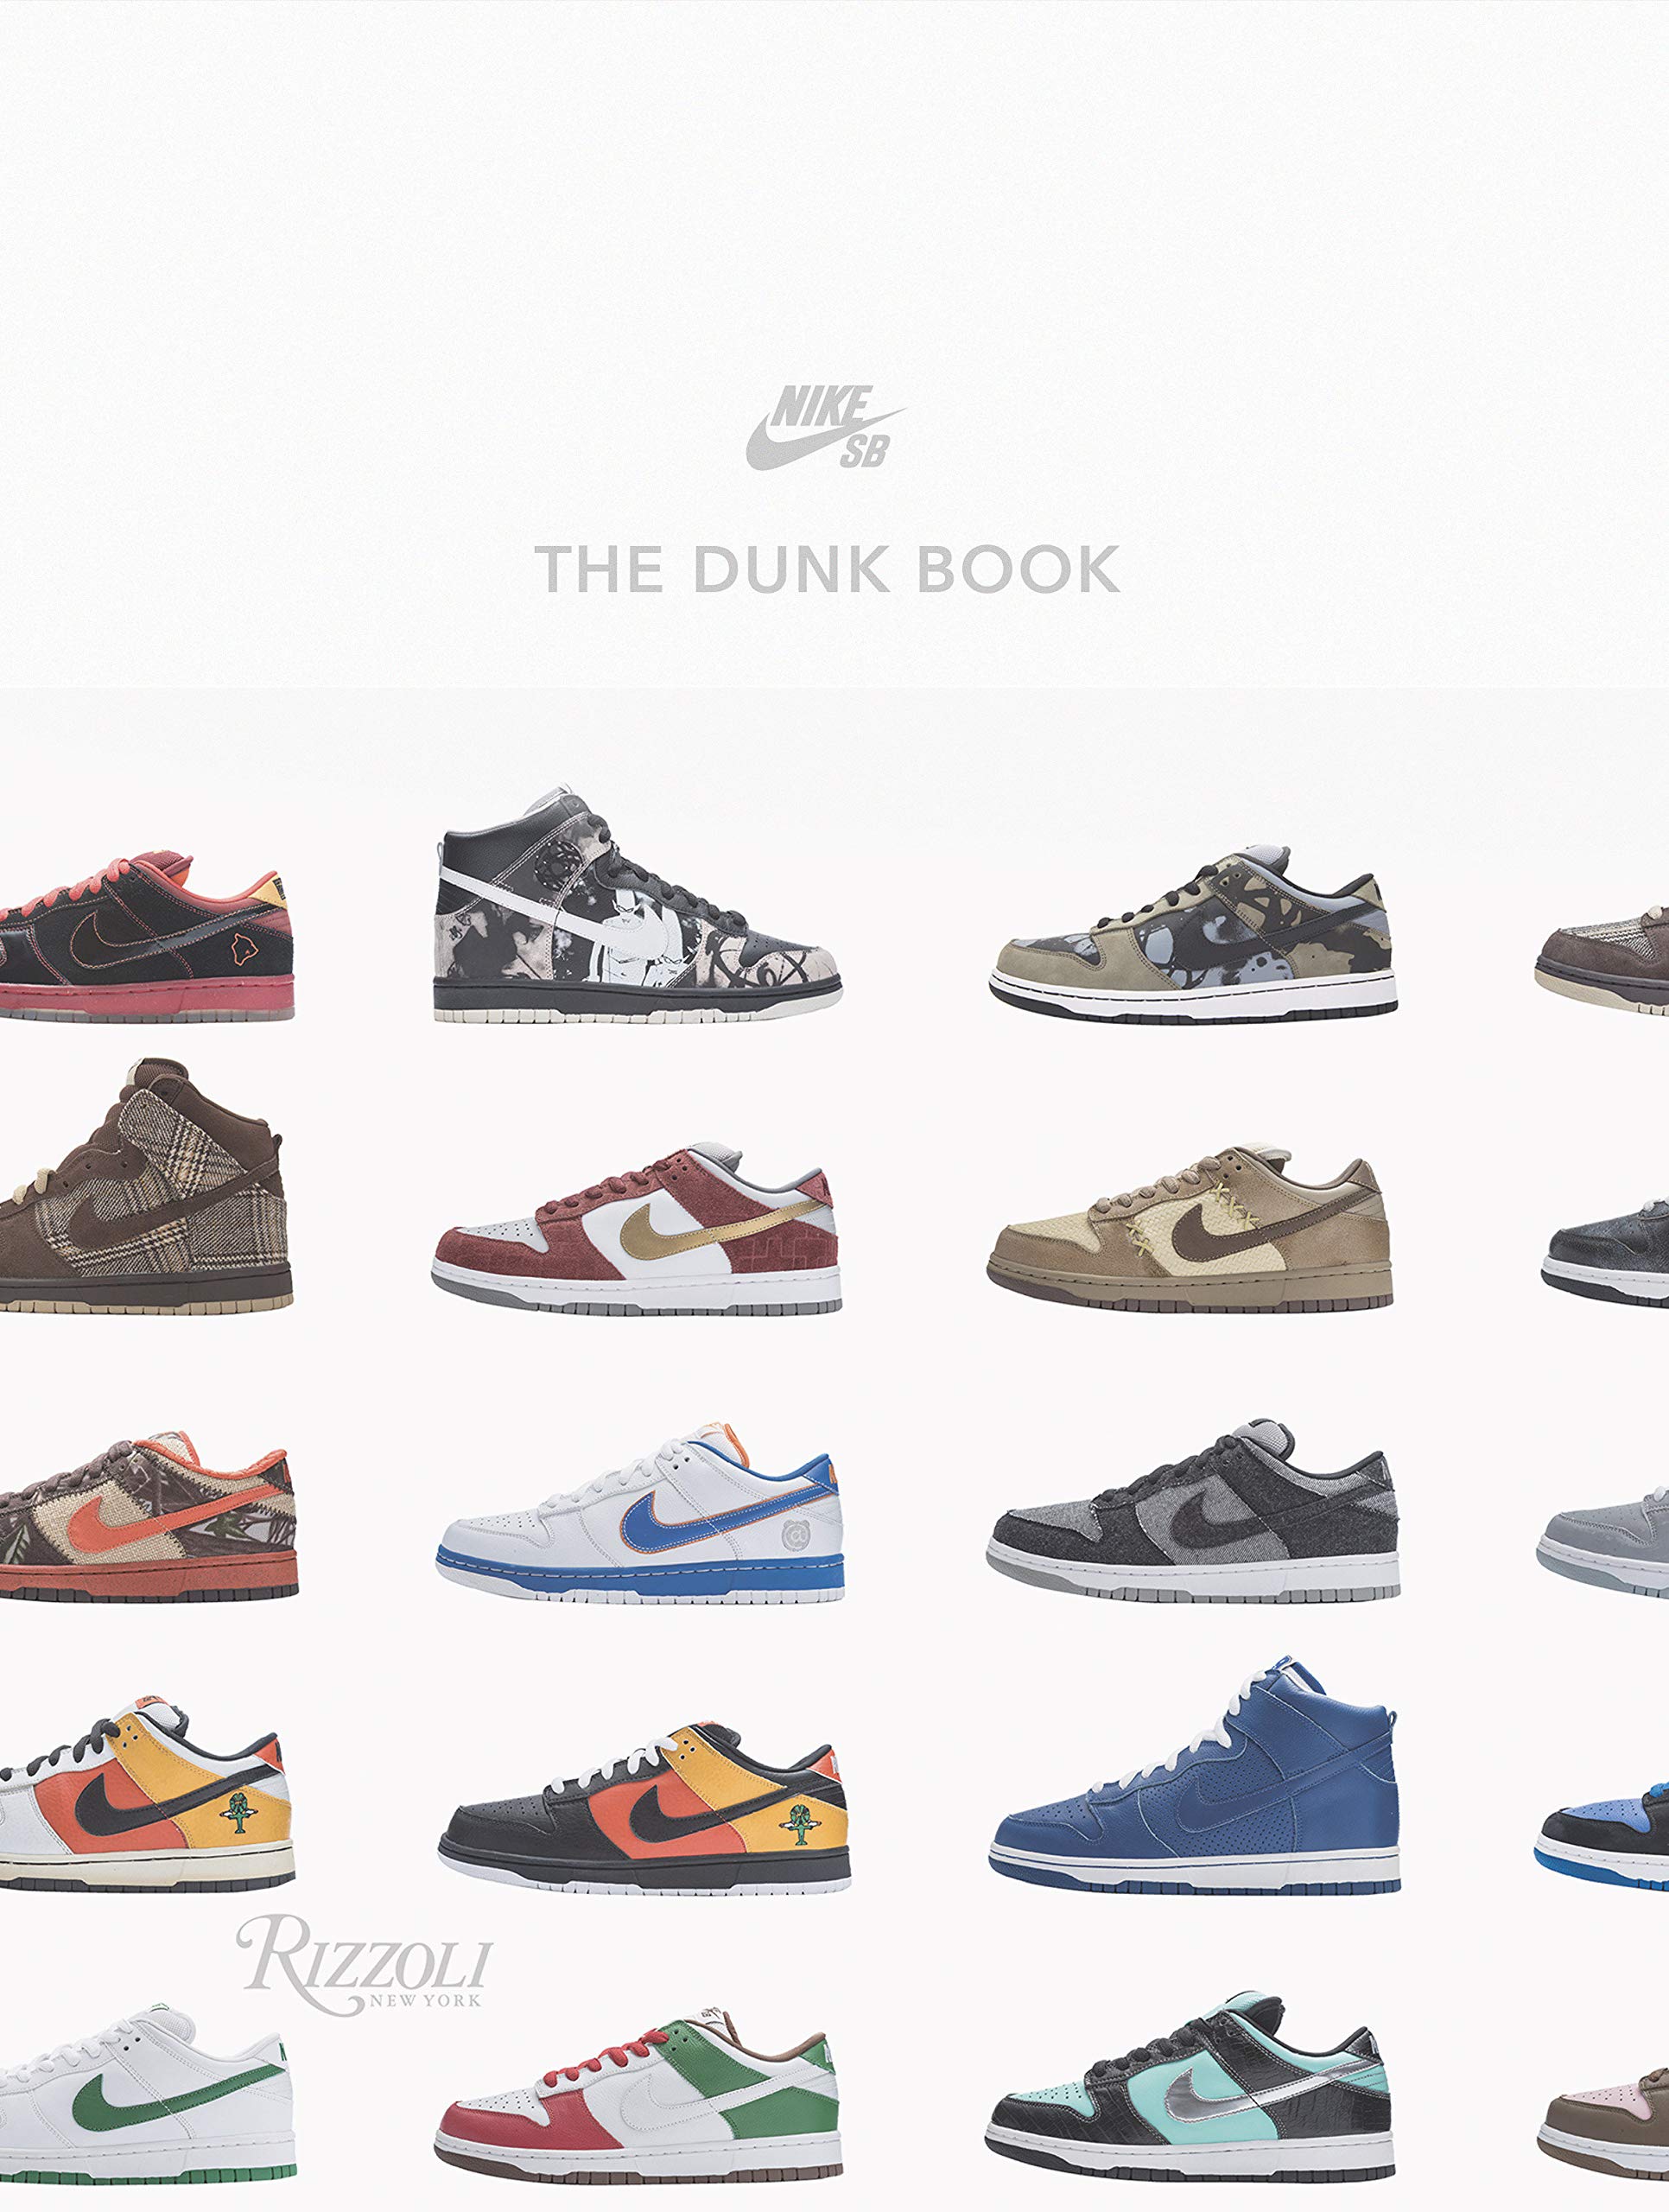  - The Dunk Book. Nike SB